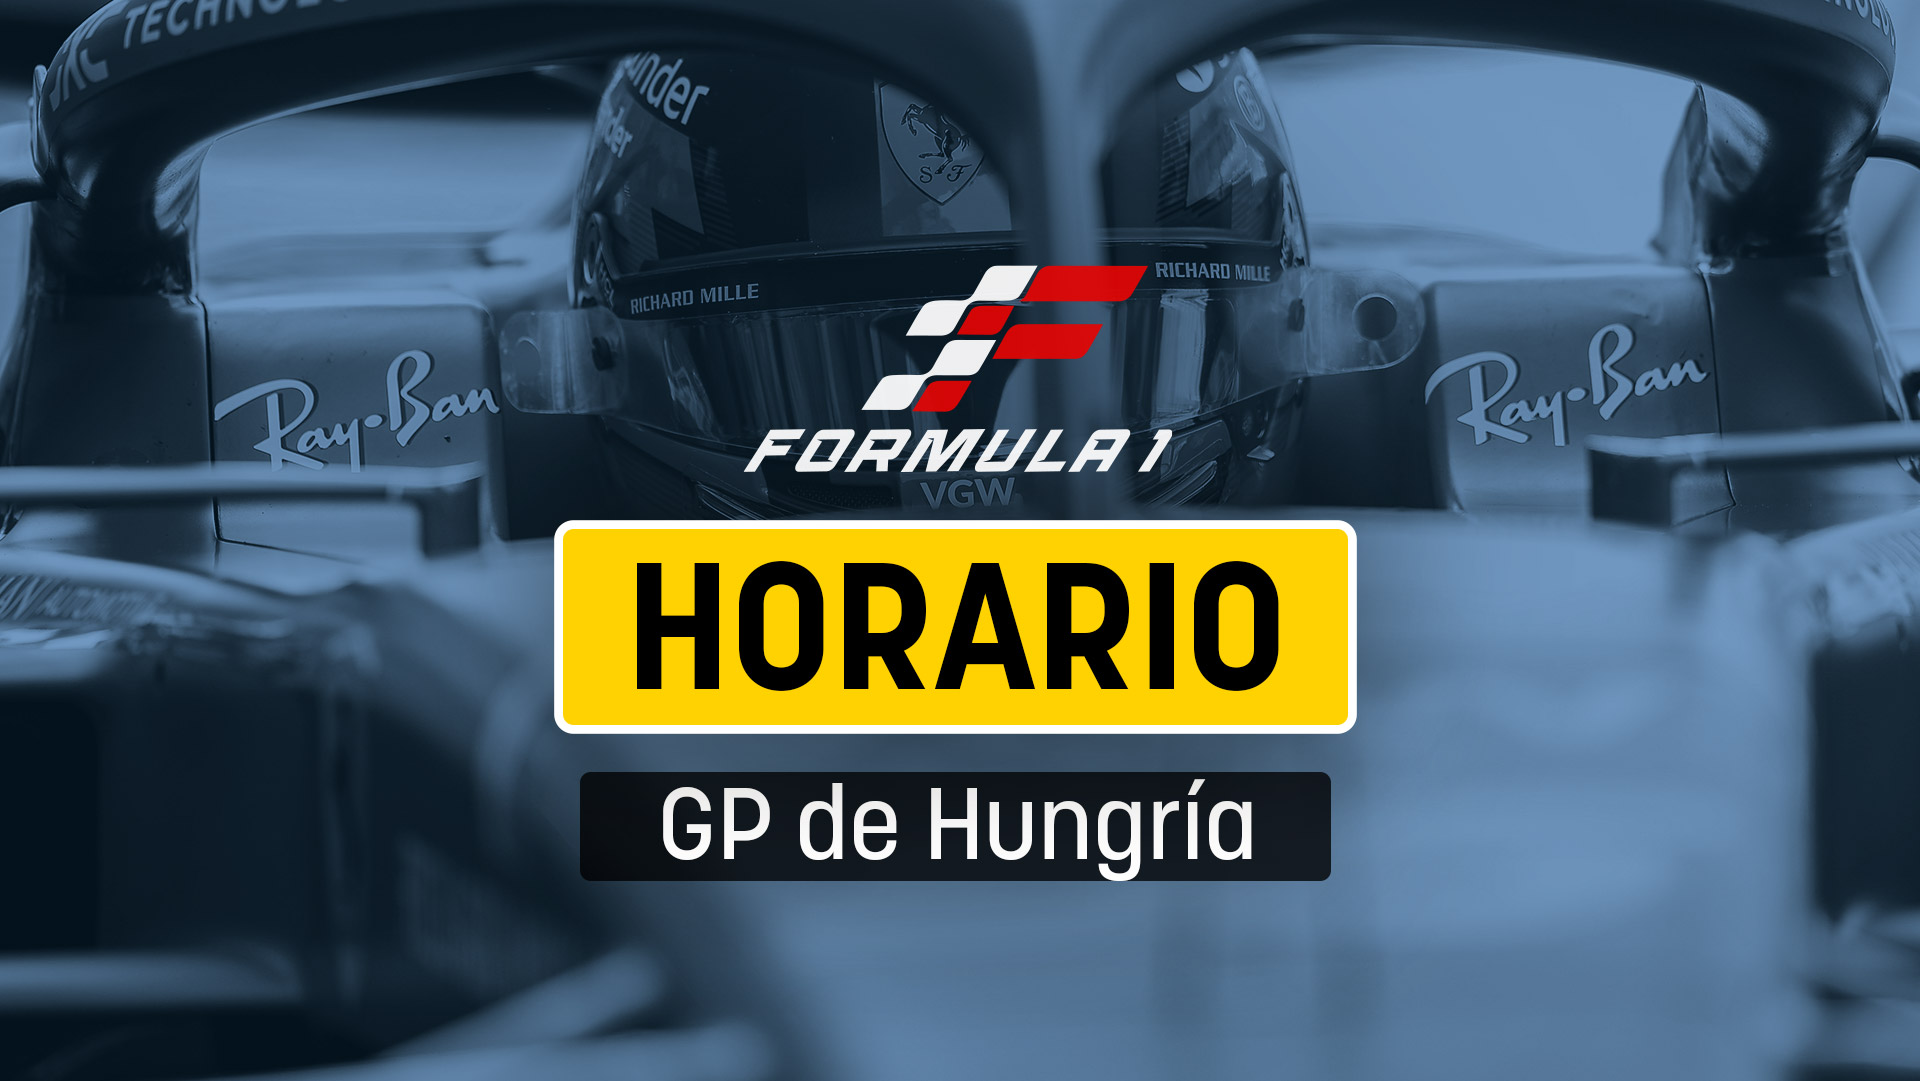 Horario F1 GP de Hungría : dónde ver Fórmula 1 en directo gratis en vivo por TV y online.